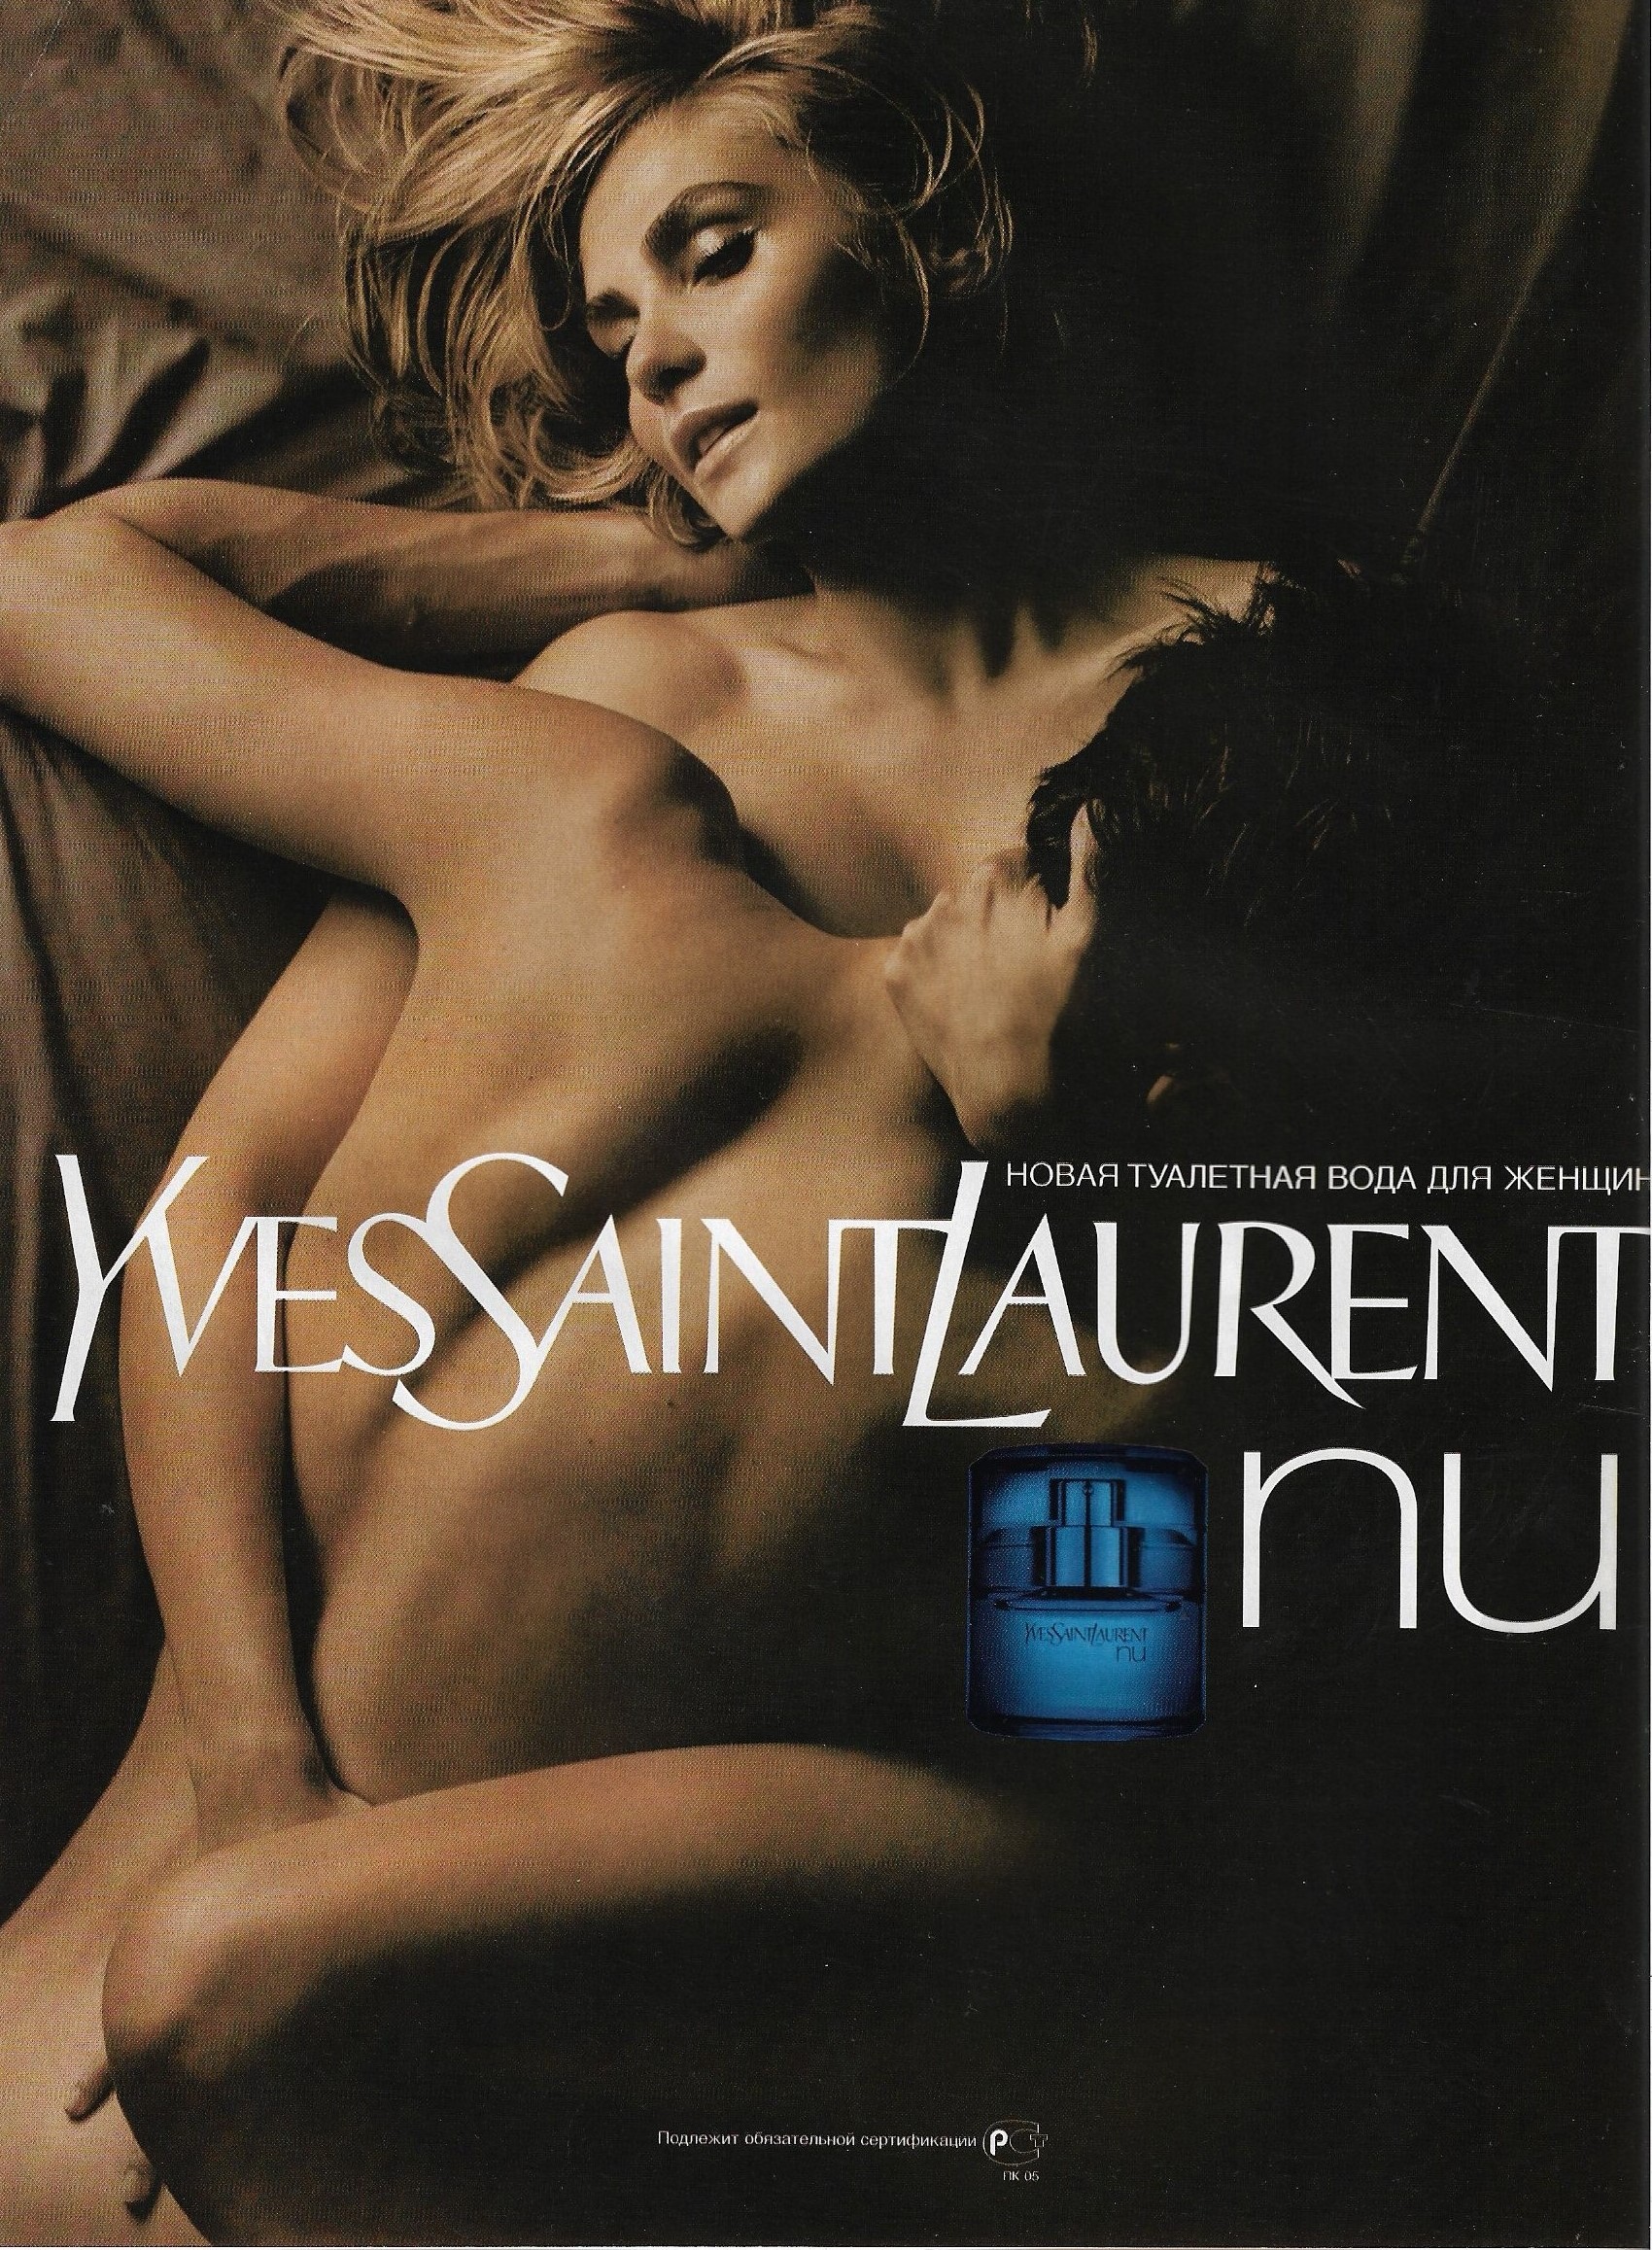 Yves Saint Laurent 'Nu' perfume. 